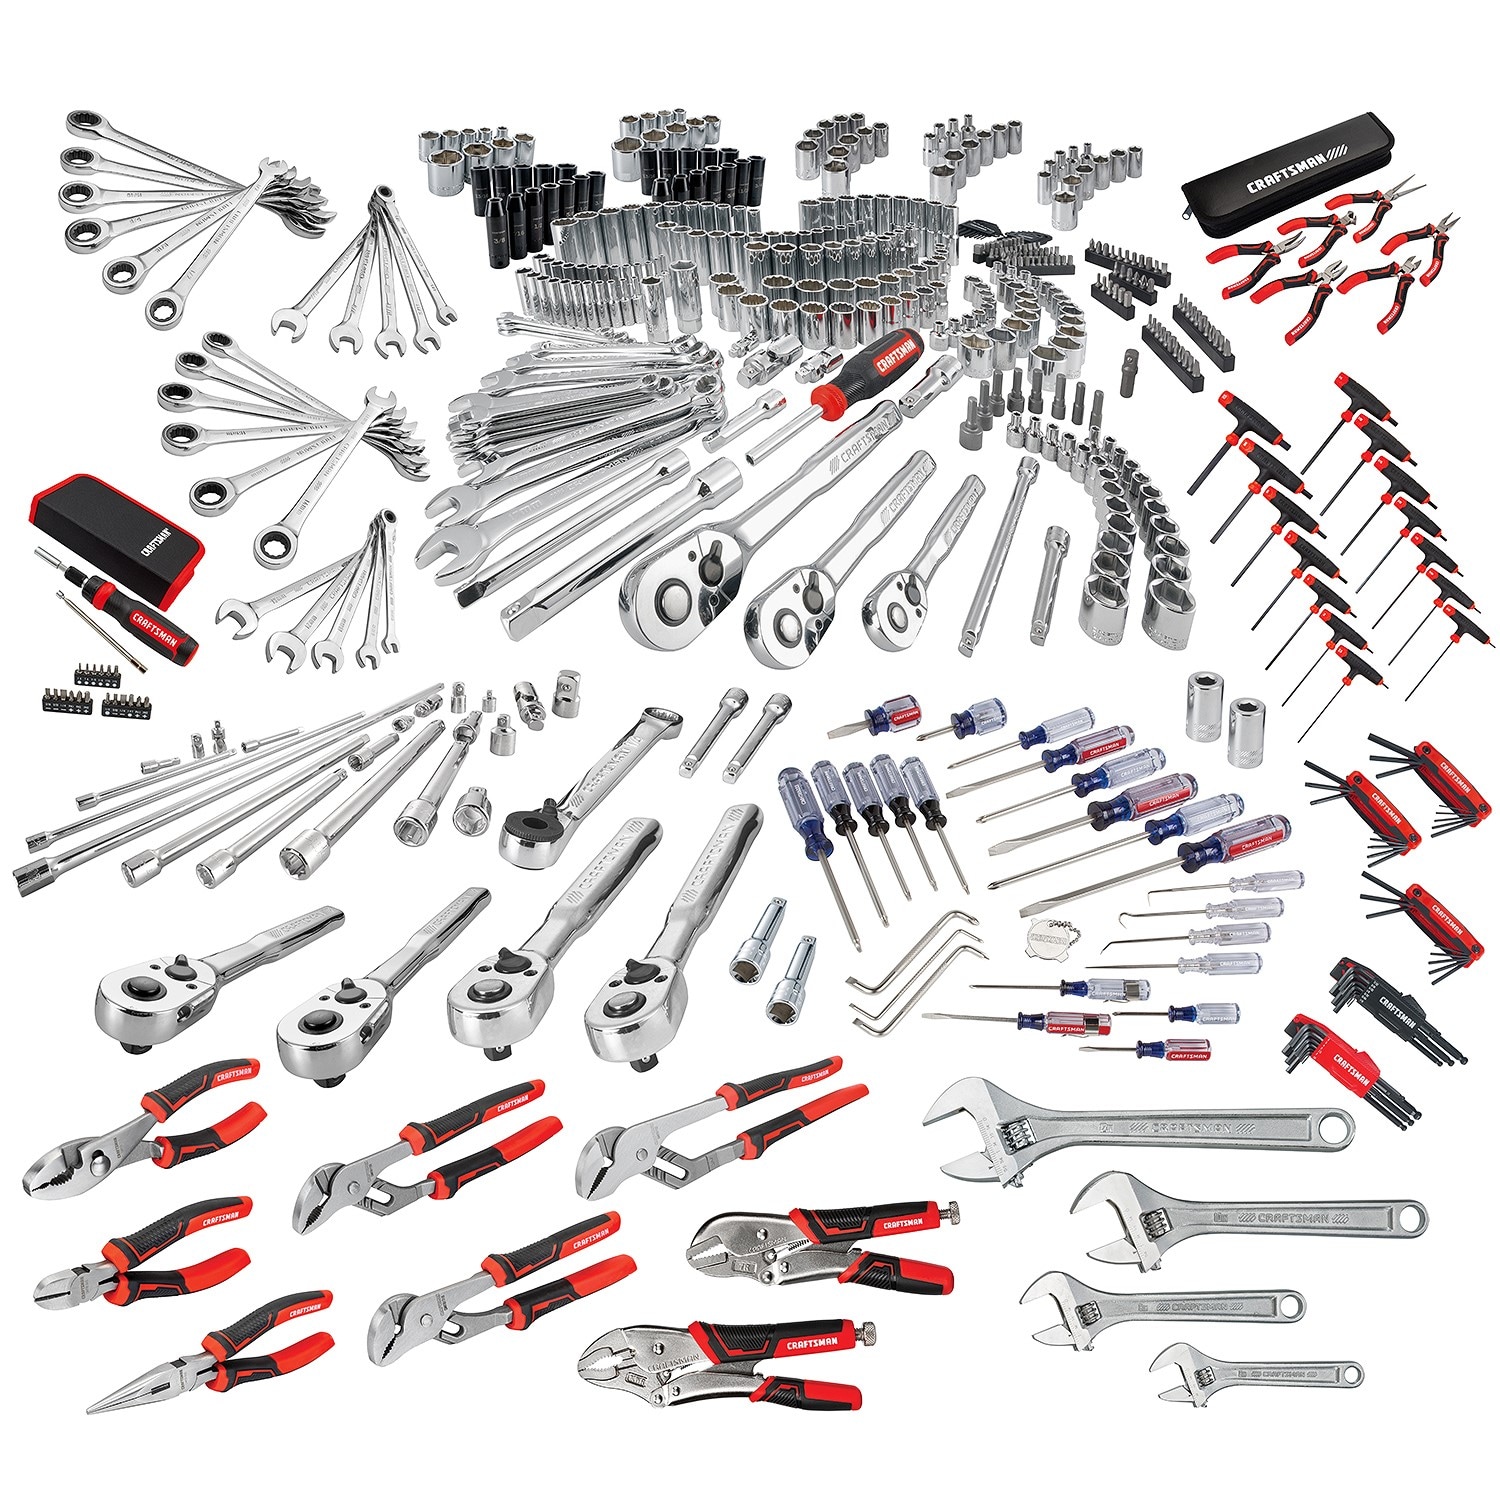 hand tools for mechanics